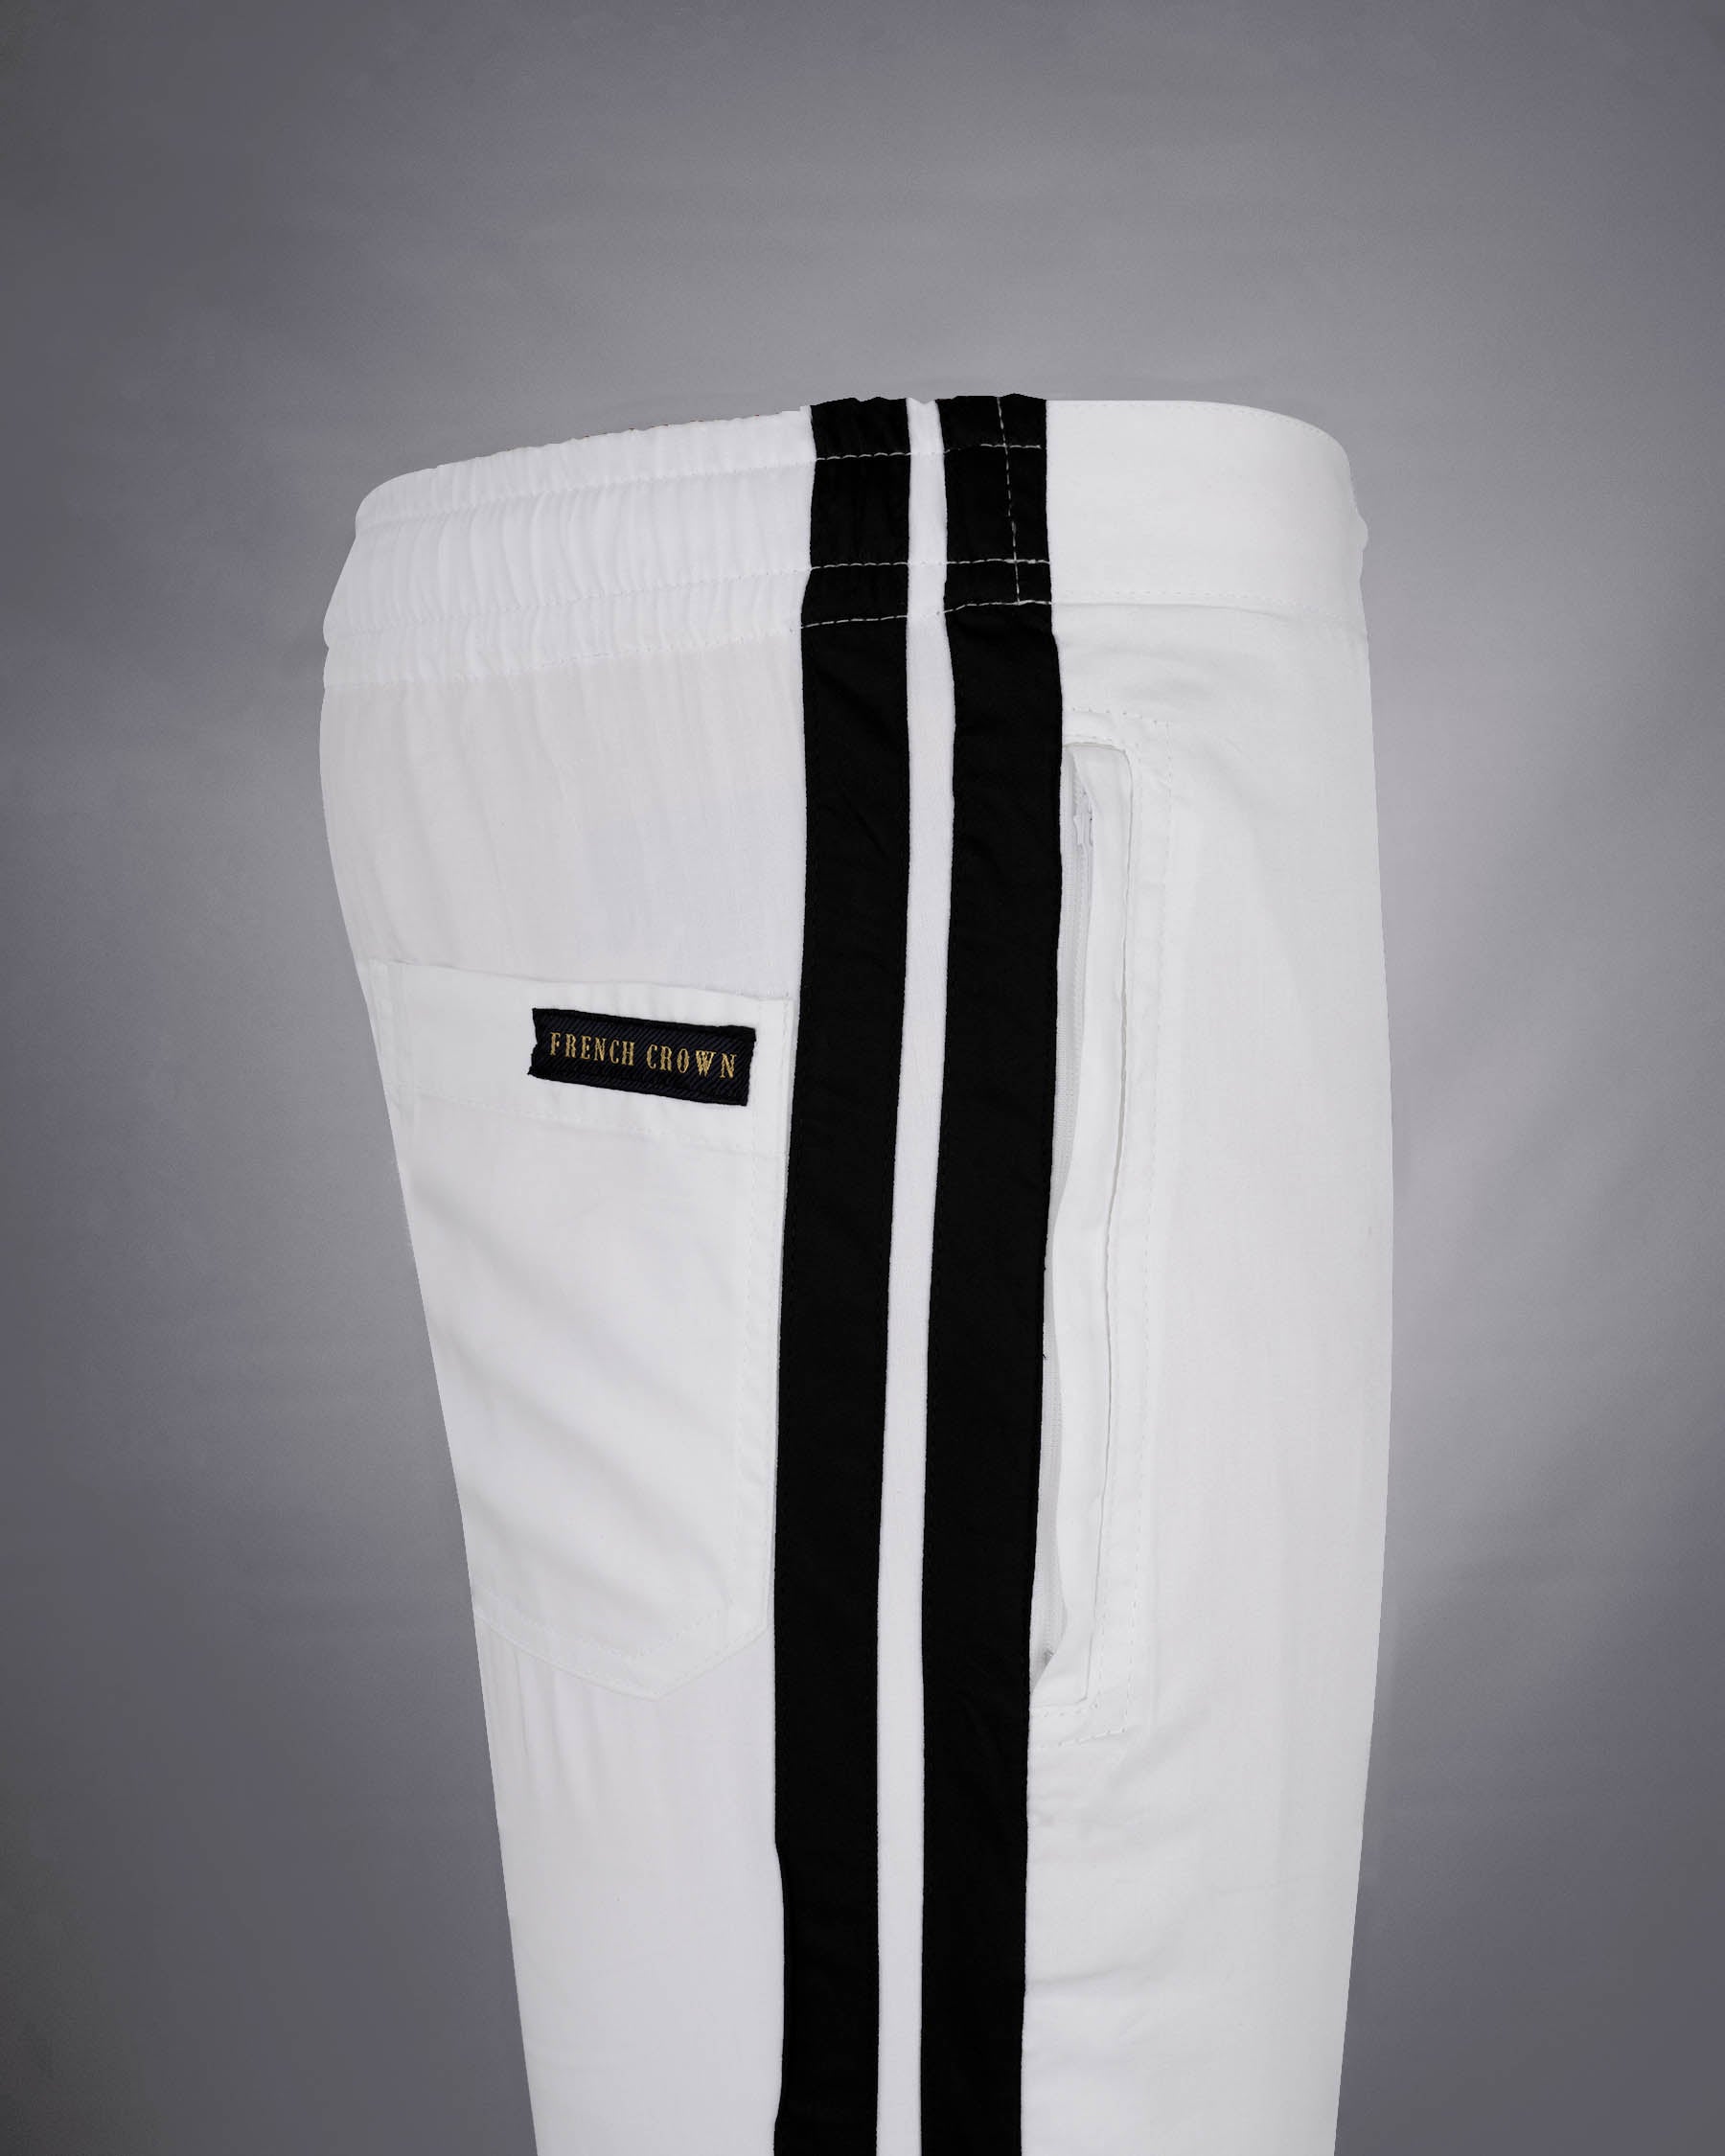 Jade Black And Bright White Super Soft Premium Cotton Designer Lounge Pant LP170-28, LP170-30, LP170-32, LP170-34, LP170-36, LP170-38, LP170-40, LP170-42, LP170-44